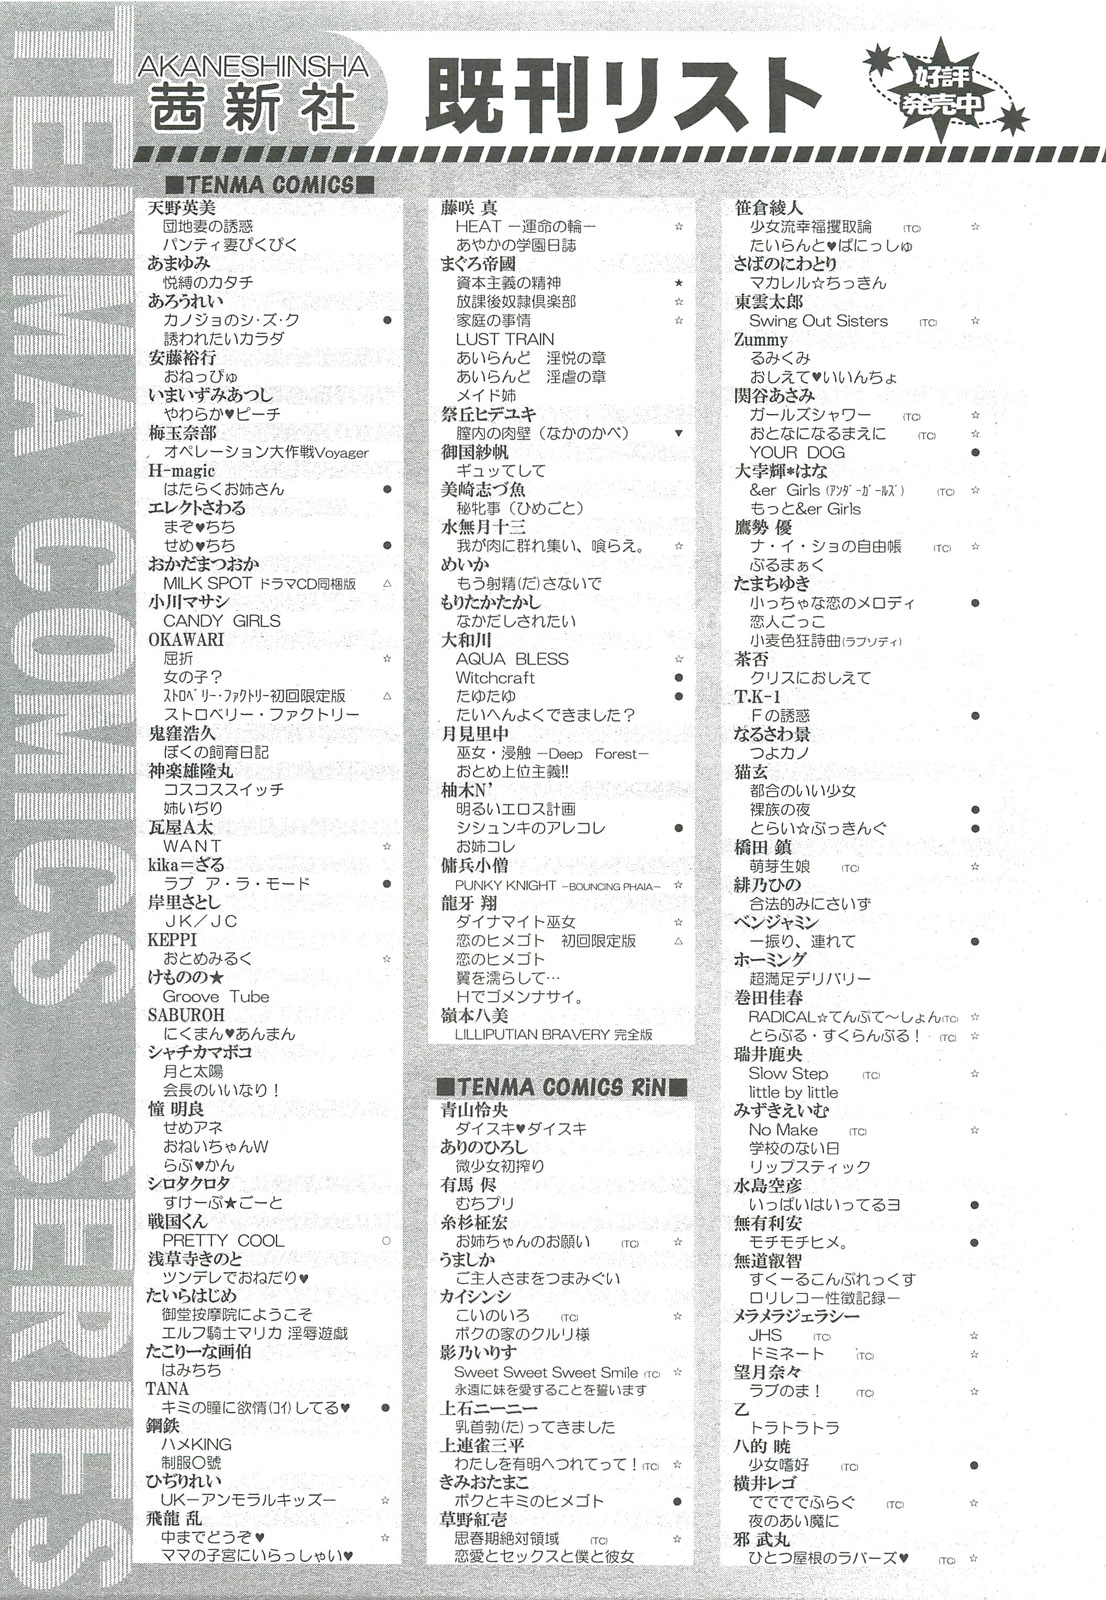 COMIC LO 2010年10月号 Vol.79